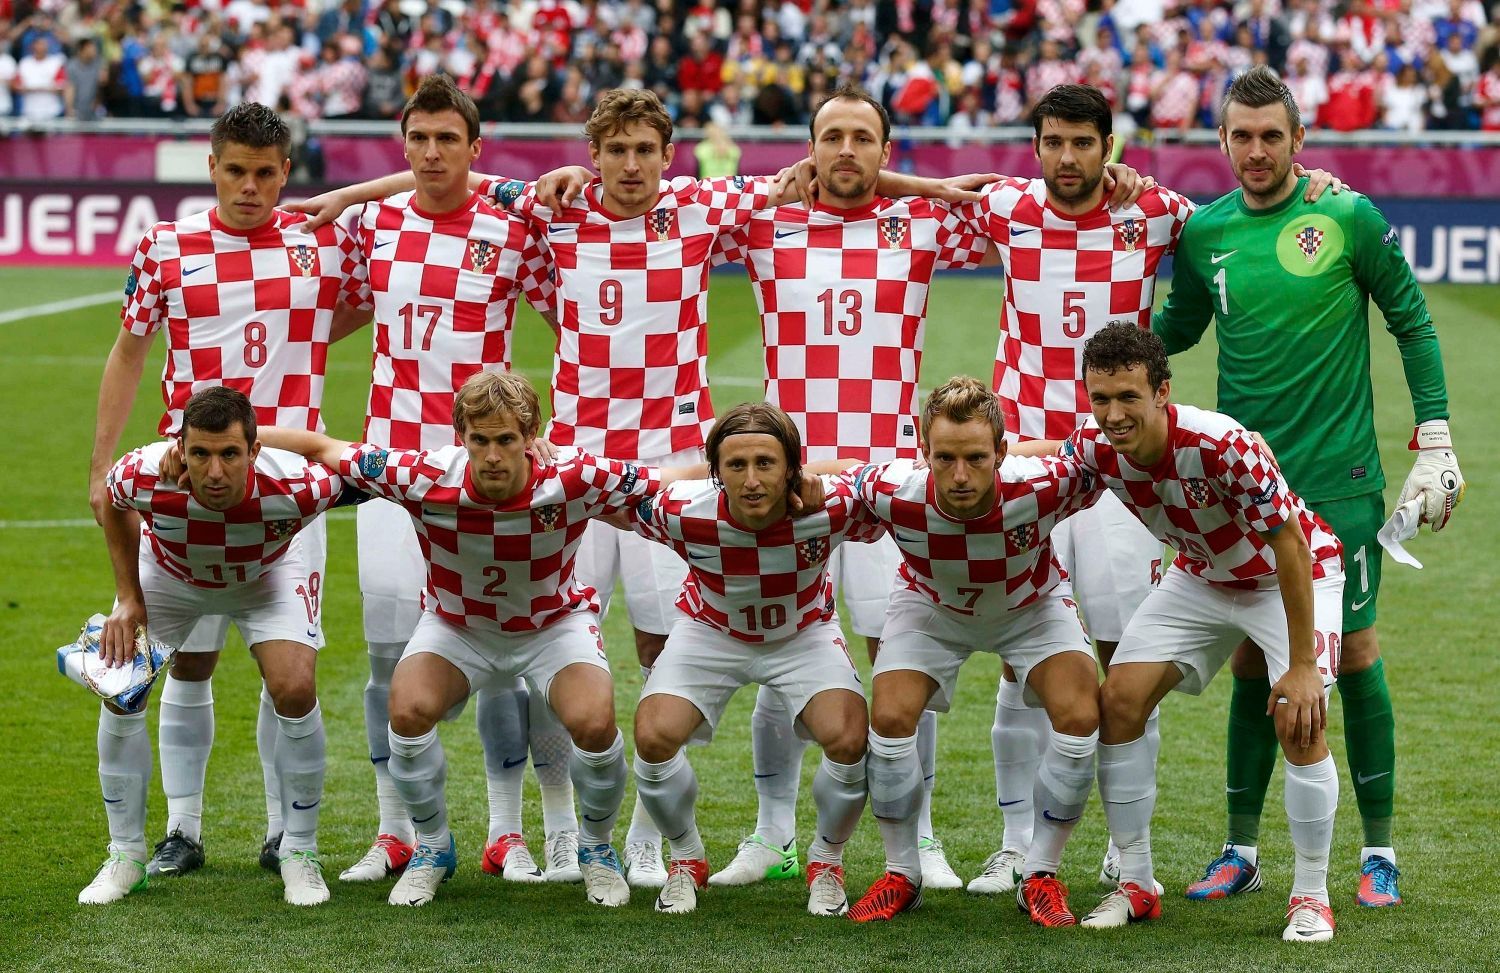 Chorvatský tým před utkáním Chorvatska s Itálií ve skupině C na Euru 2012